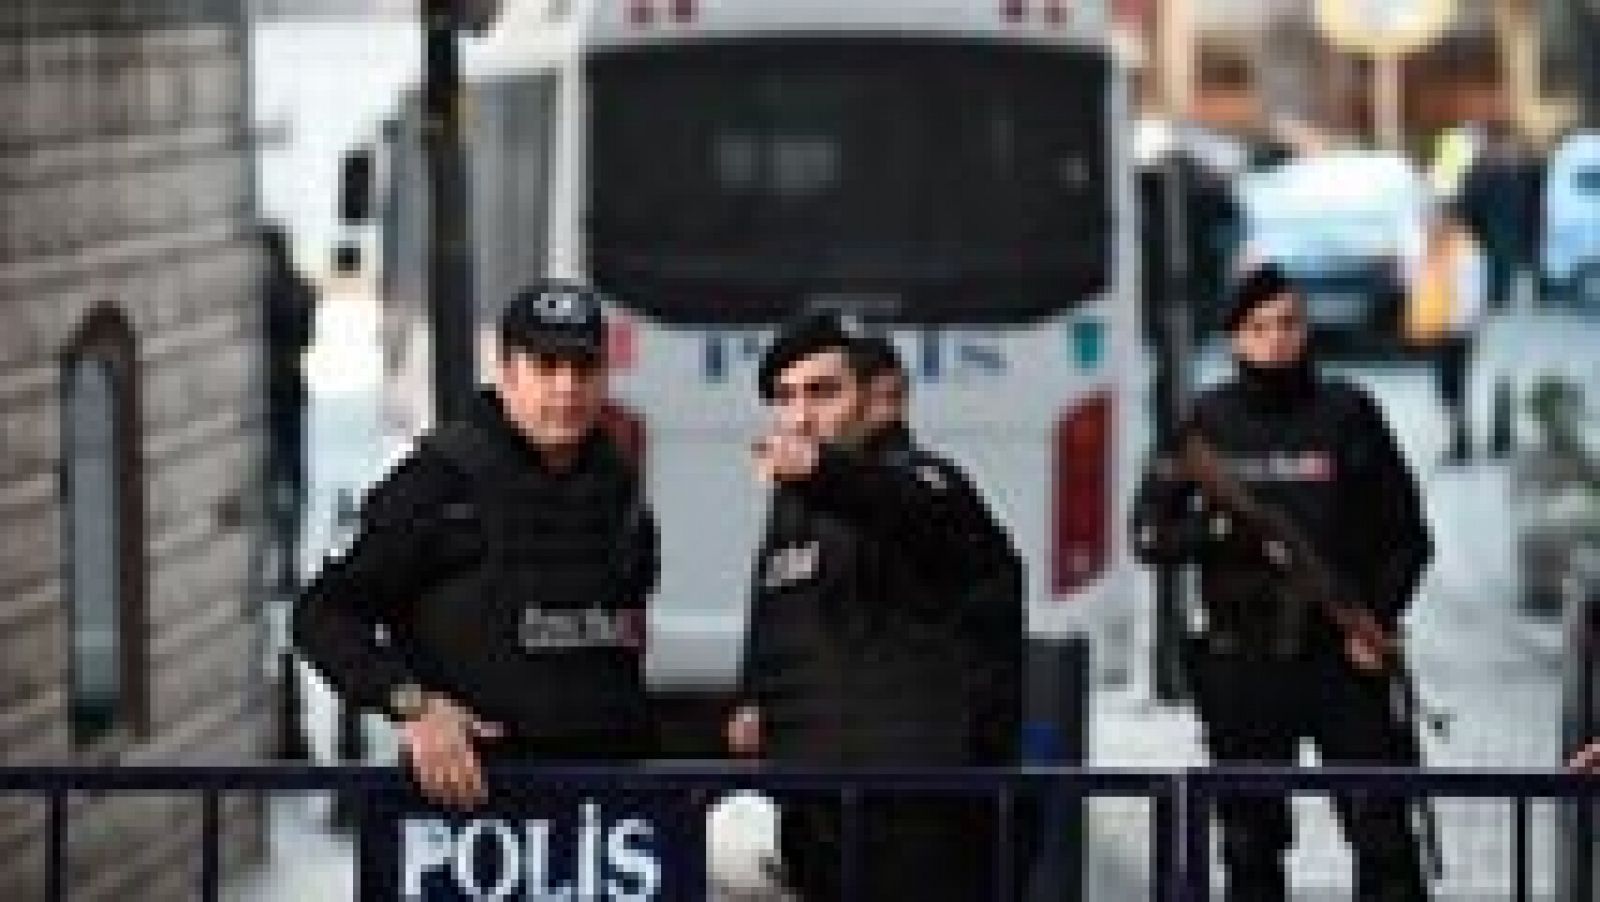 Explosión en Estambul